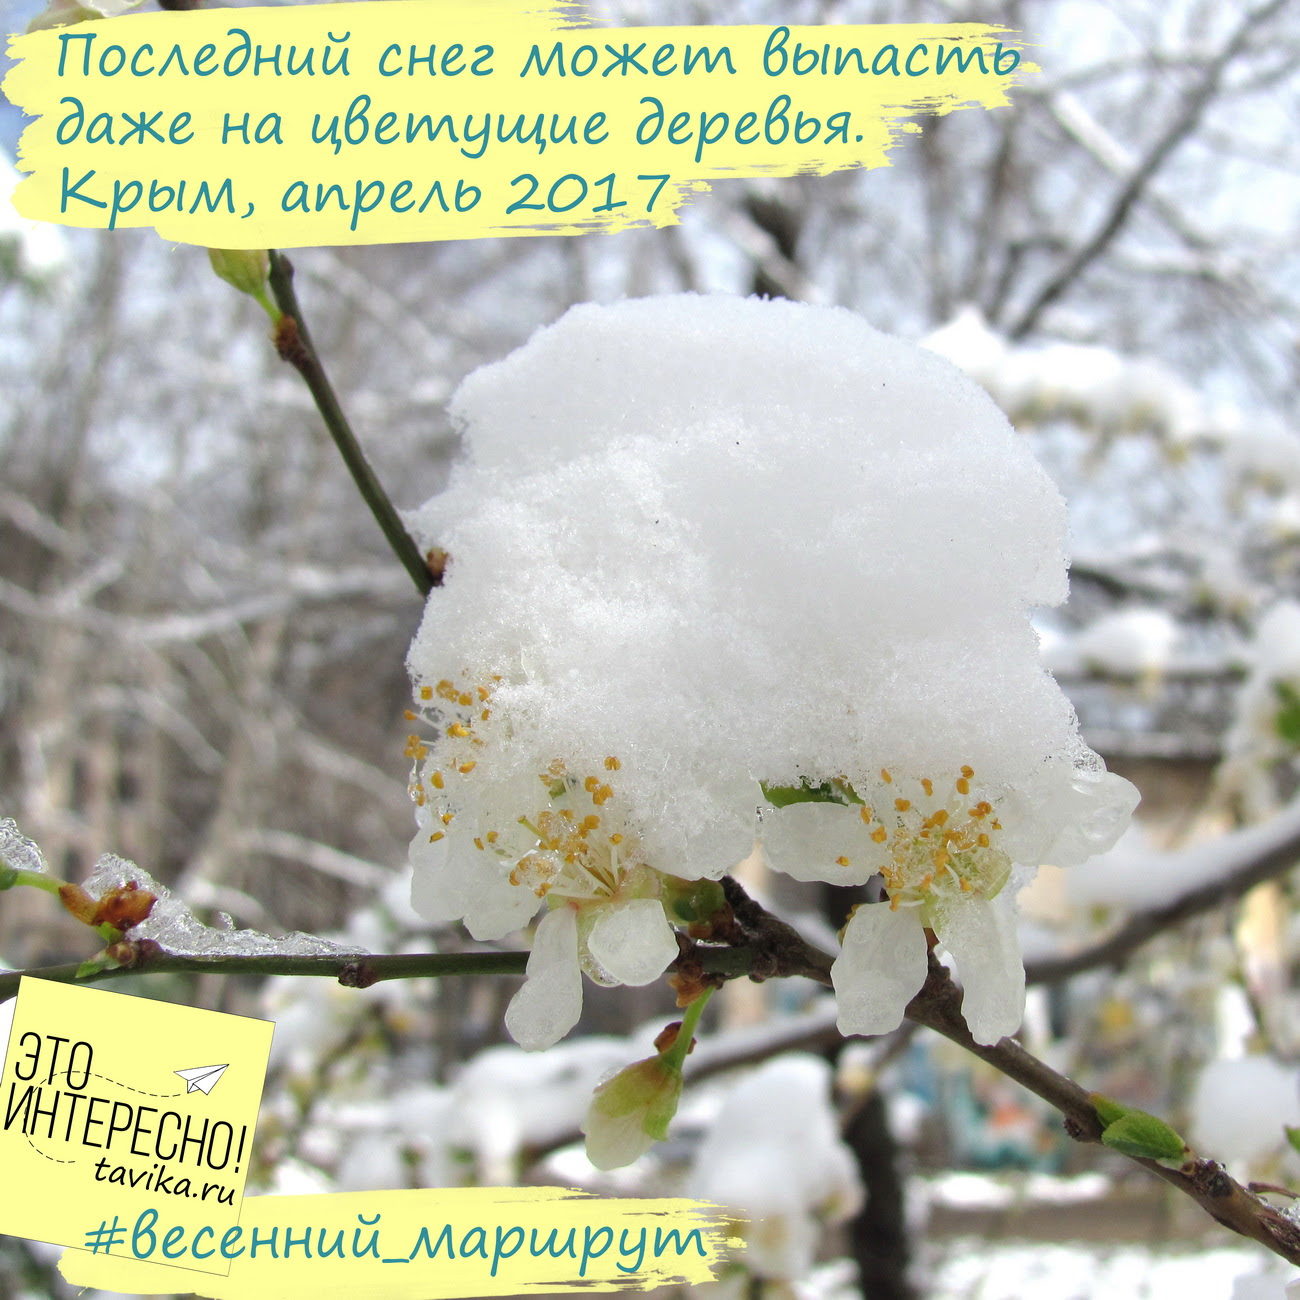 Последние  весенние заморозки в Крыму